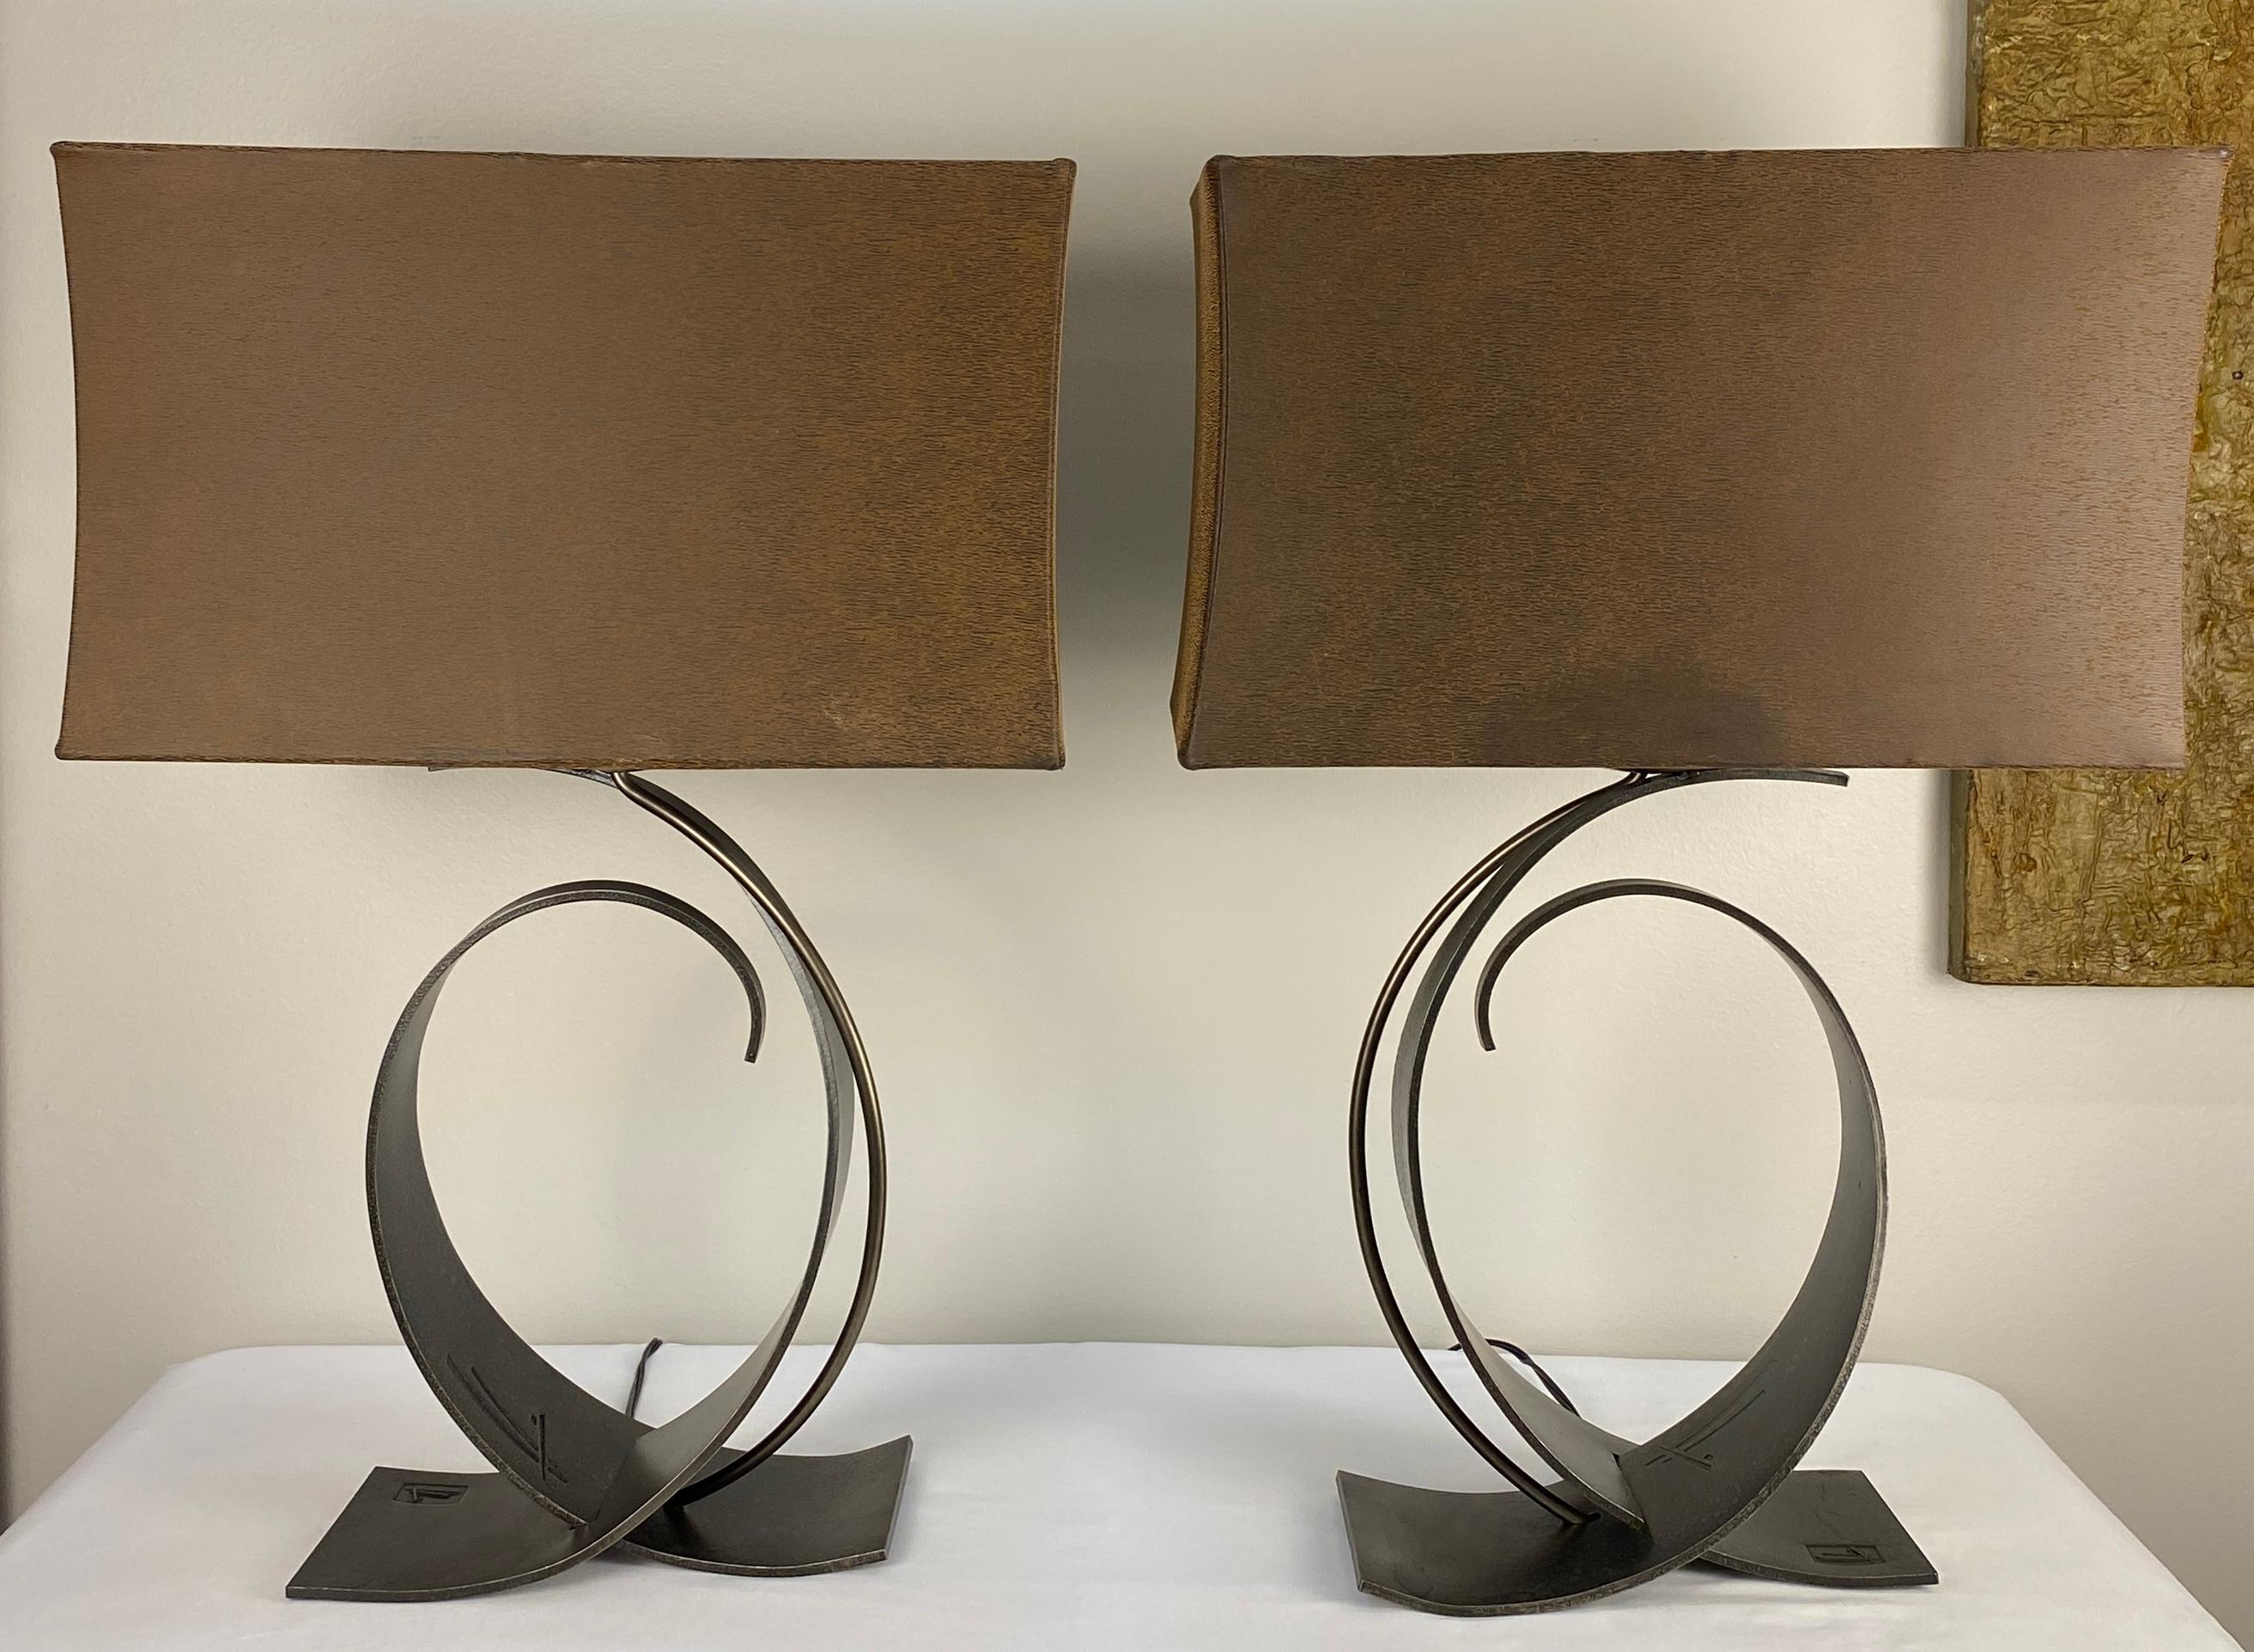 Zwei hochwertige Tischlampen aus geschmiedetem Eisen von Hubbardton. 

Spüren Sie die Geschmeidigkeit von Hubbardton, das im Staat Vermont von Hand geschmiedet wird. Jede Leuchte ist von Jugendstildesignern wie Hector Guimard, Antonio Gaudi und